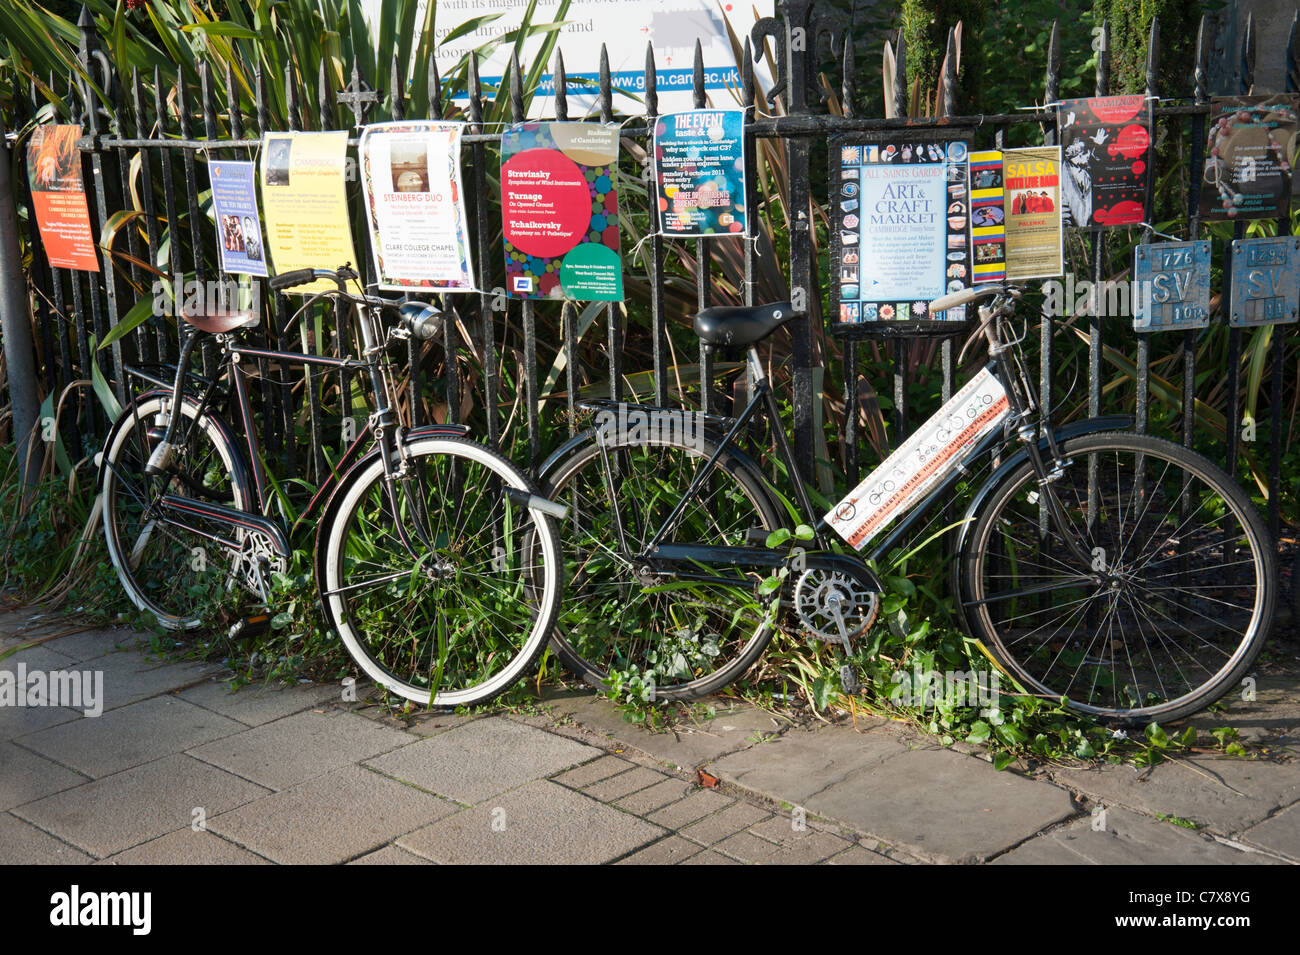 Zyklen, angekettet an Eisengitter in Cambridge Cambridgeshire England UK mit Plakaten an die Reling Werbeveranstaltungen befestigt. Stockfoto